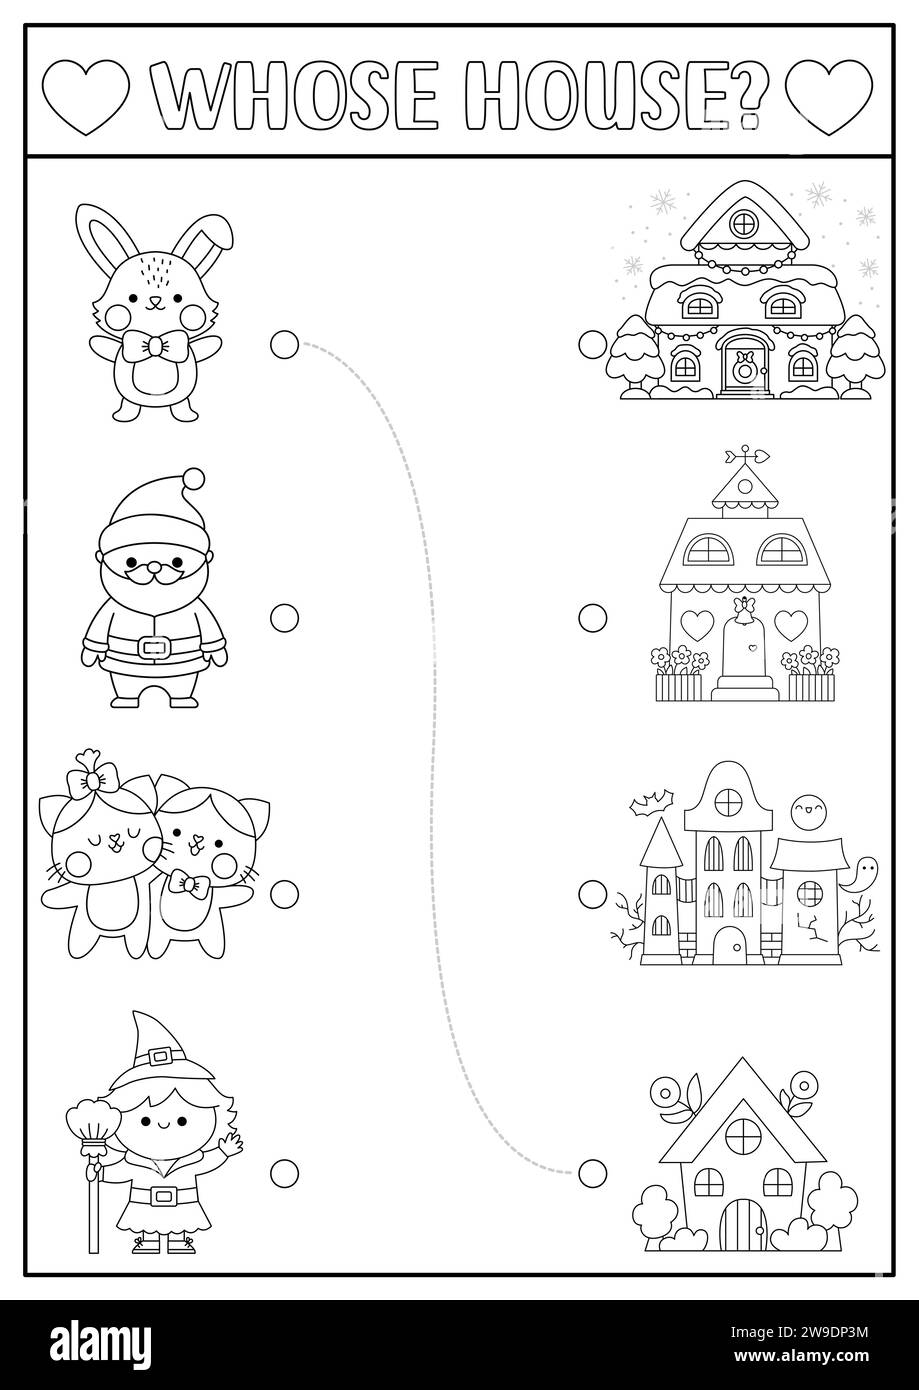 Schwarz-weiß-passende Feiertagsaktivitäten für Kinder mit Kawaii-Charakteren und ihren Häusern. Lustiges Puzzle mit Weihnachtsmann, Hase, Hexe, Katzen. W Stock Vektor